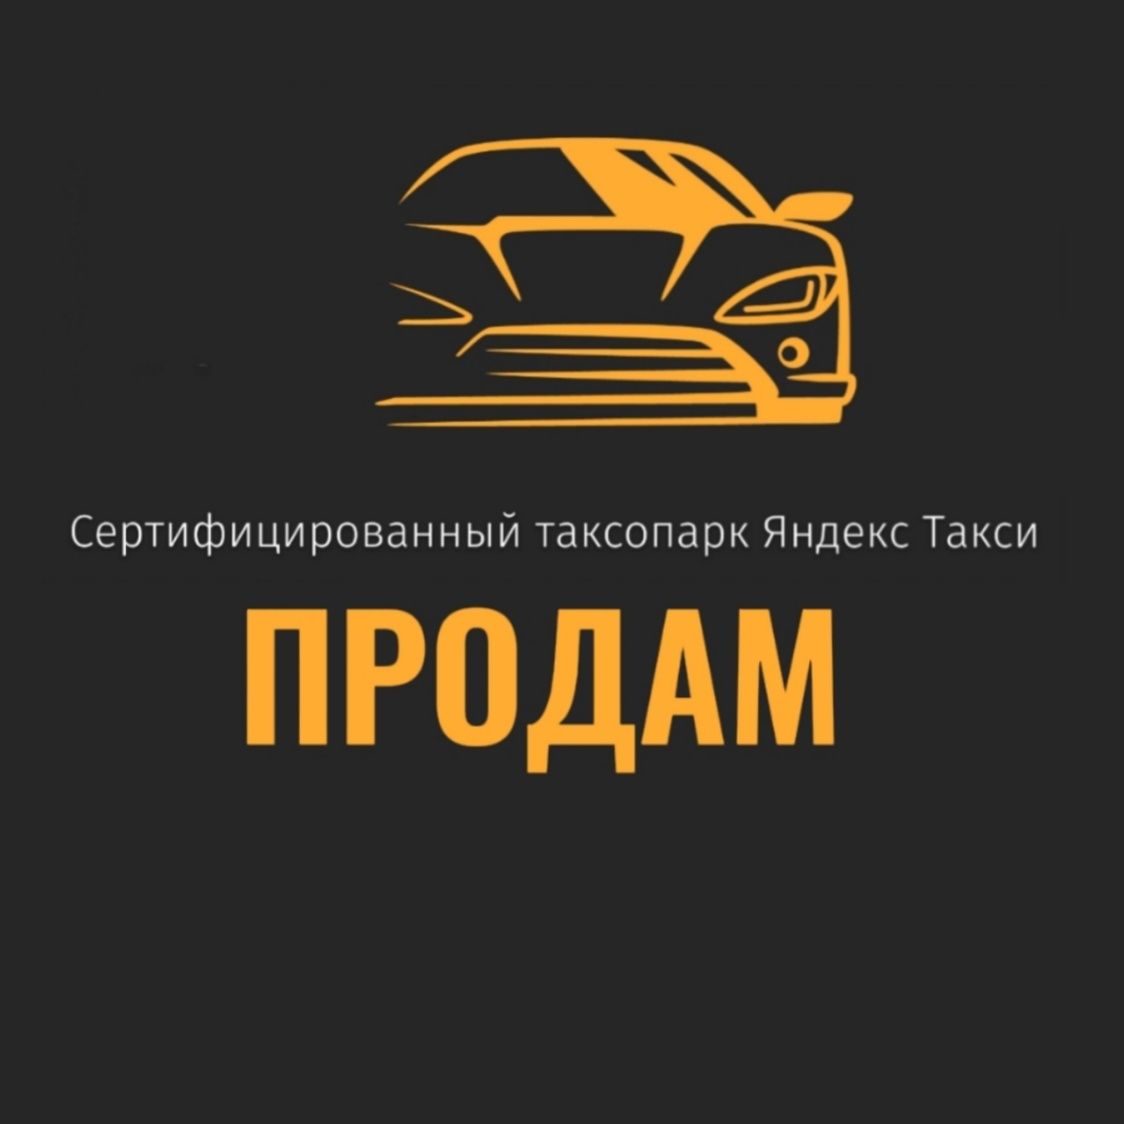 Продам действующий бизнес(таксопарк Яндекс)